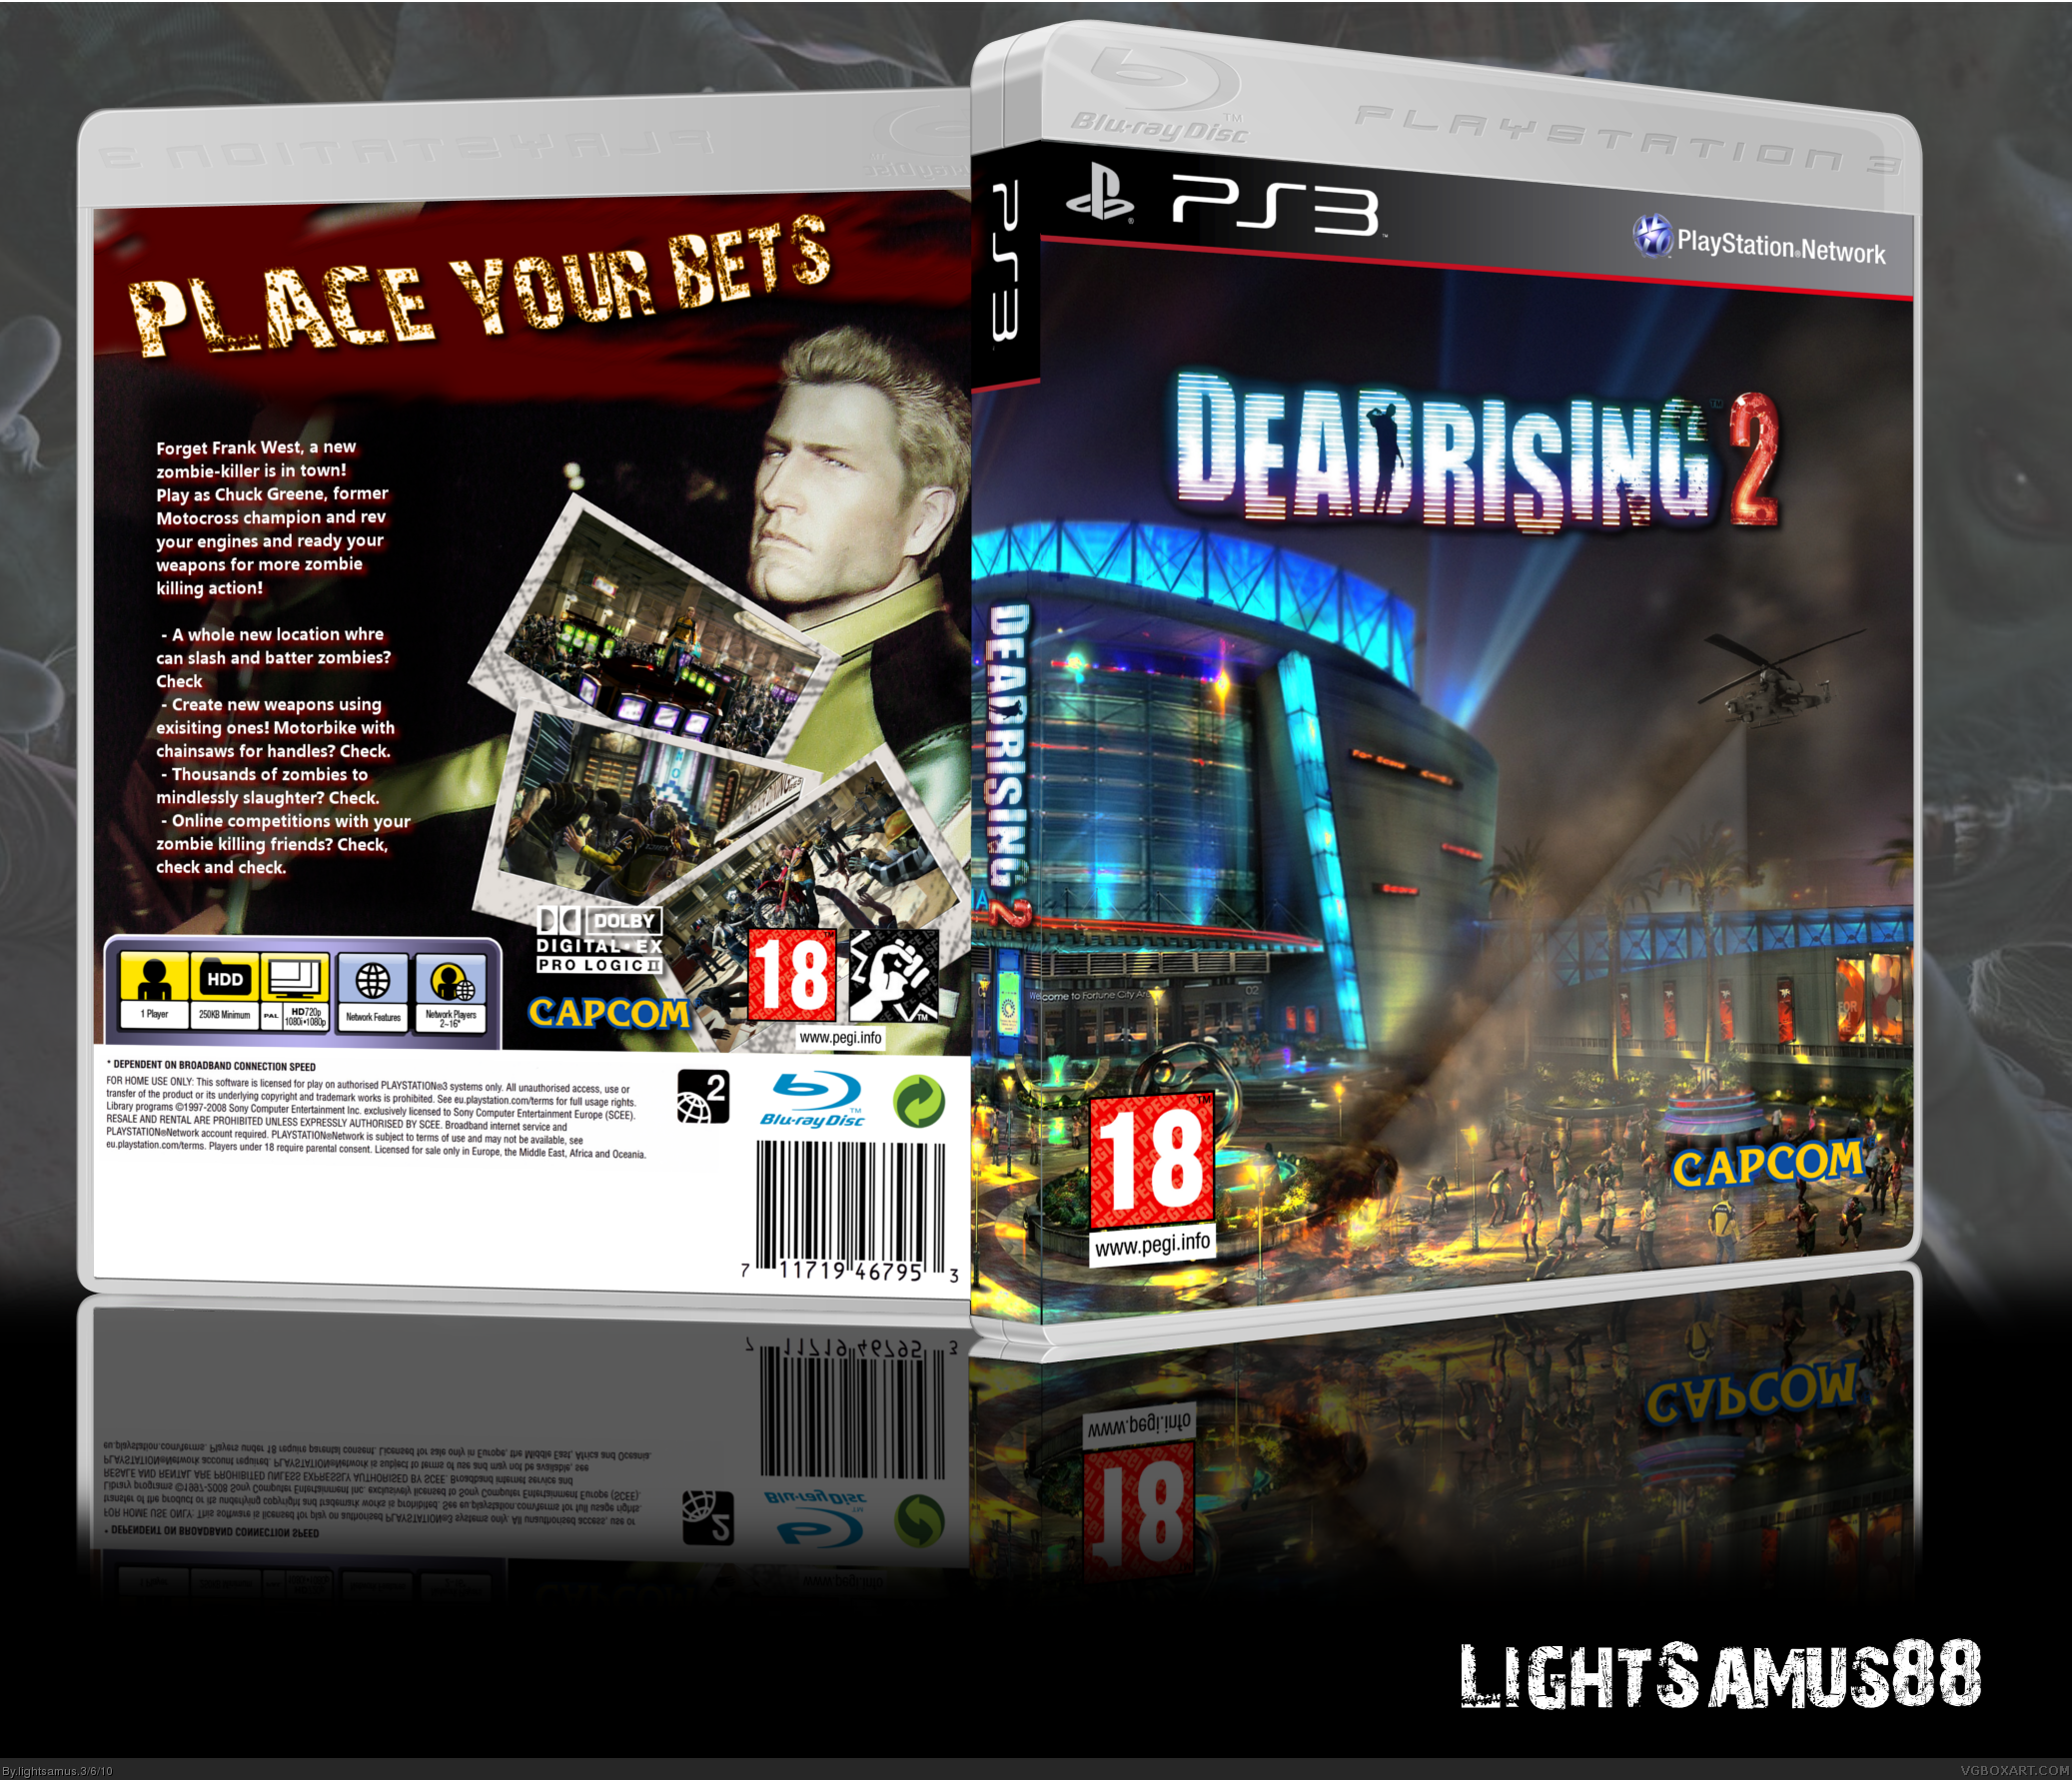 Dead Rising 2 box cover